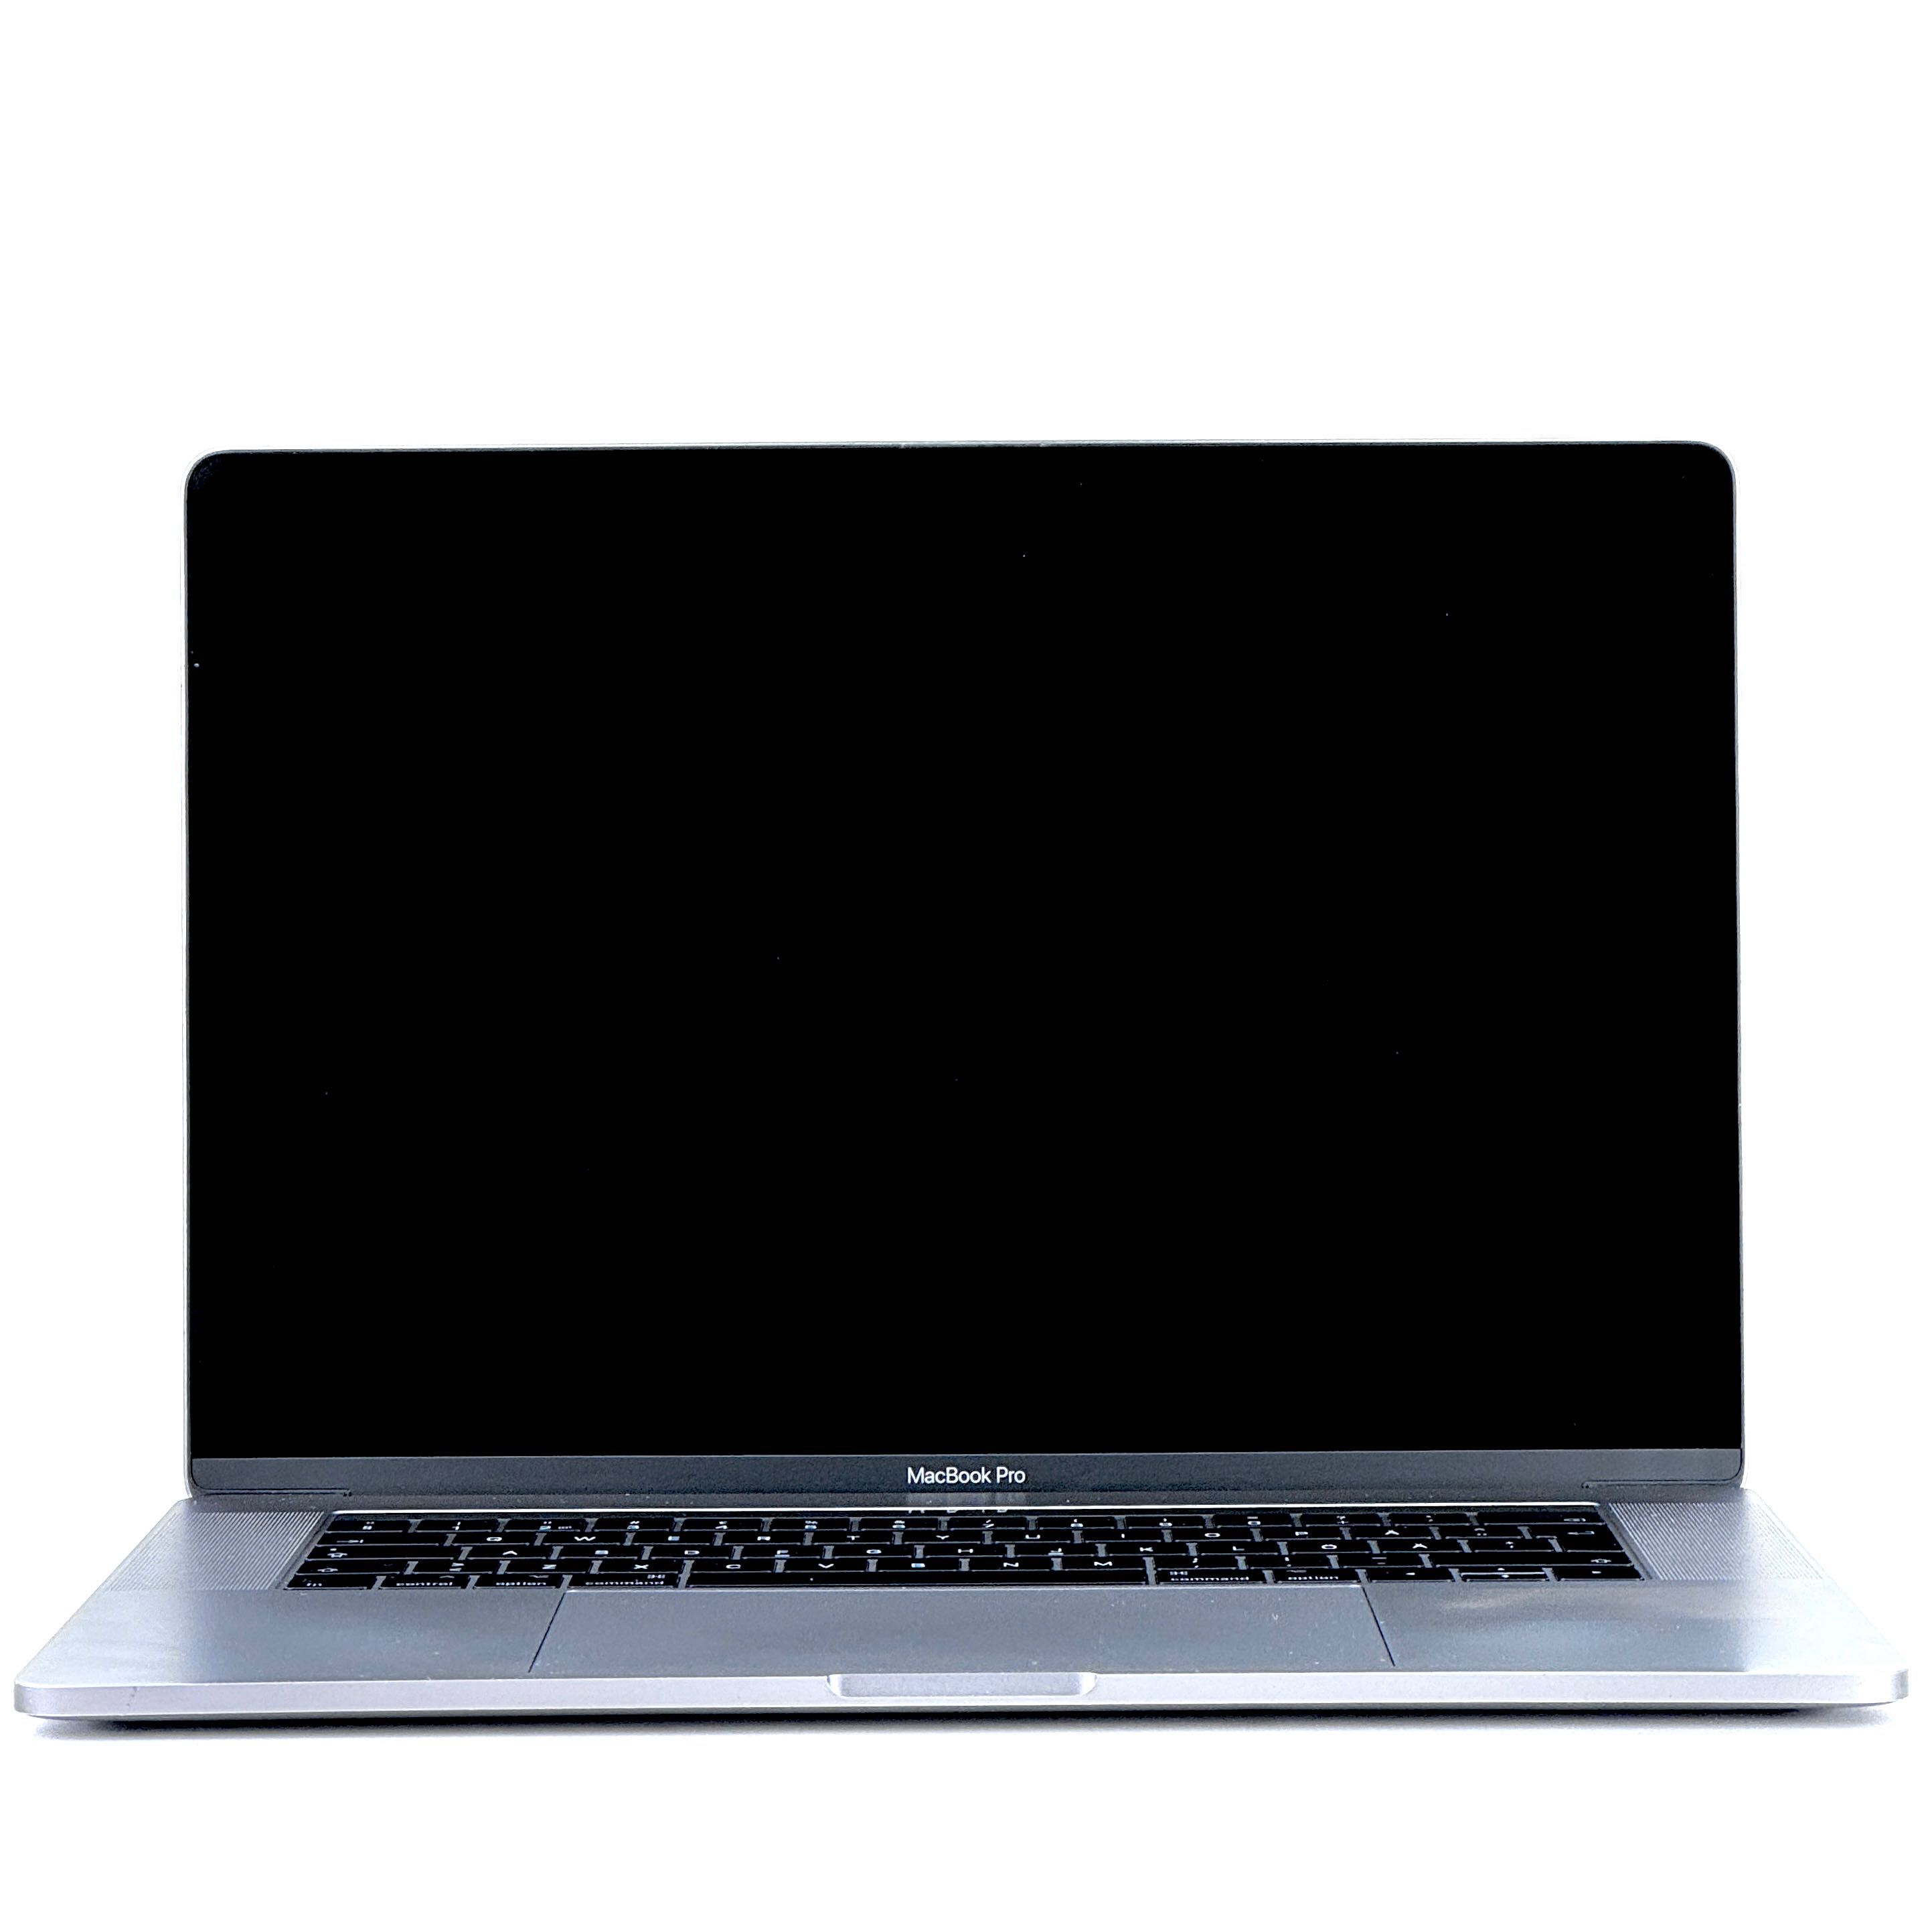 MacBook Pro 15 2016 i7|16|512|Pro455. ШОУ-РУМ+, TRADE IN+, гарантія!